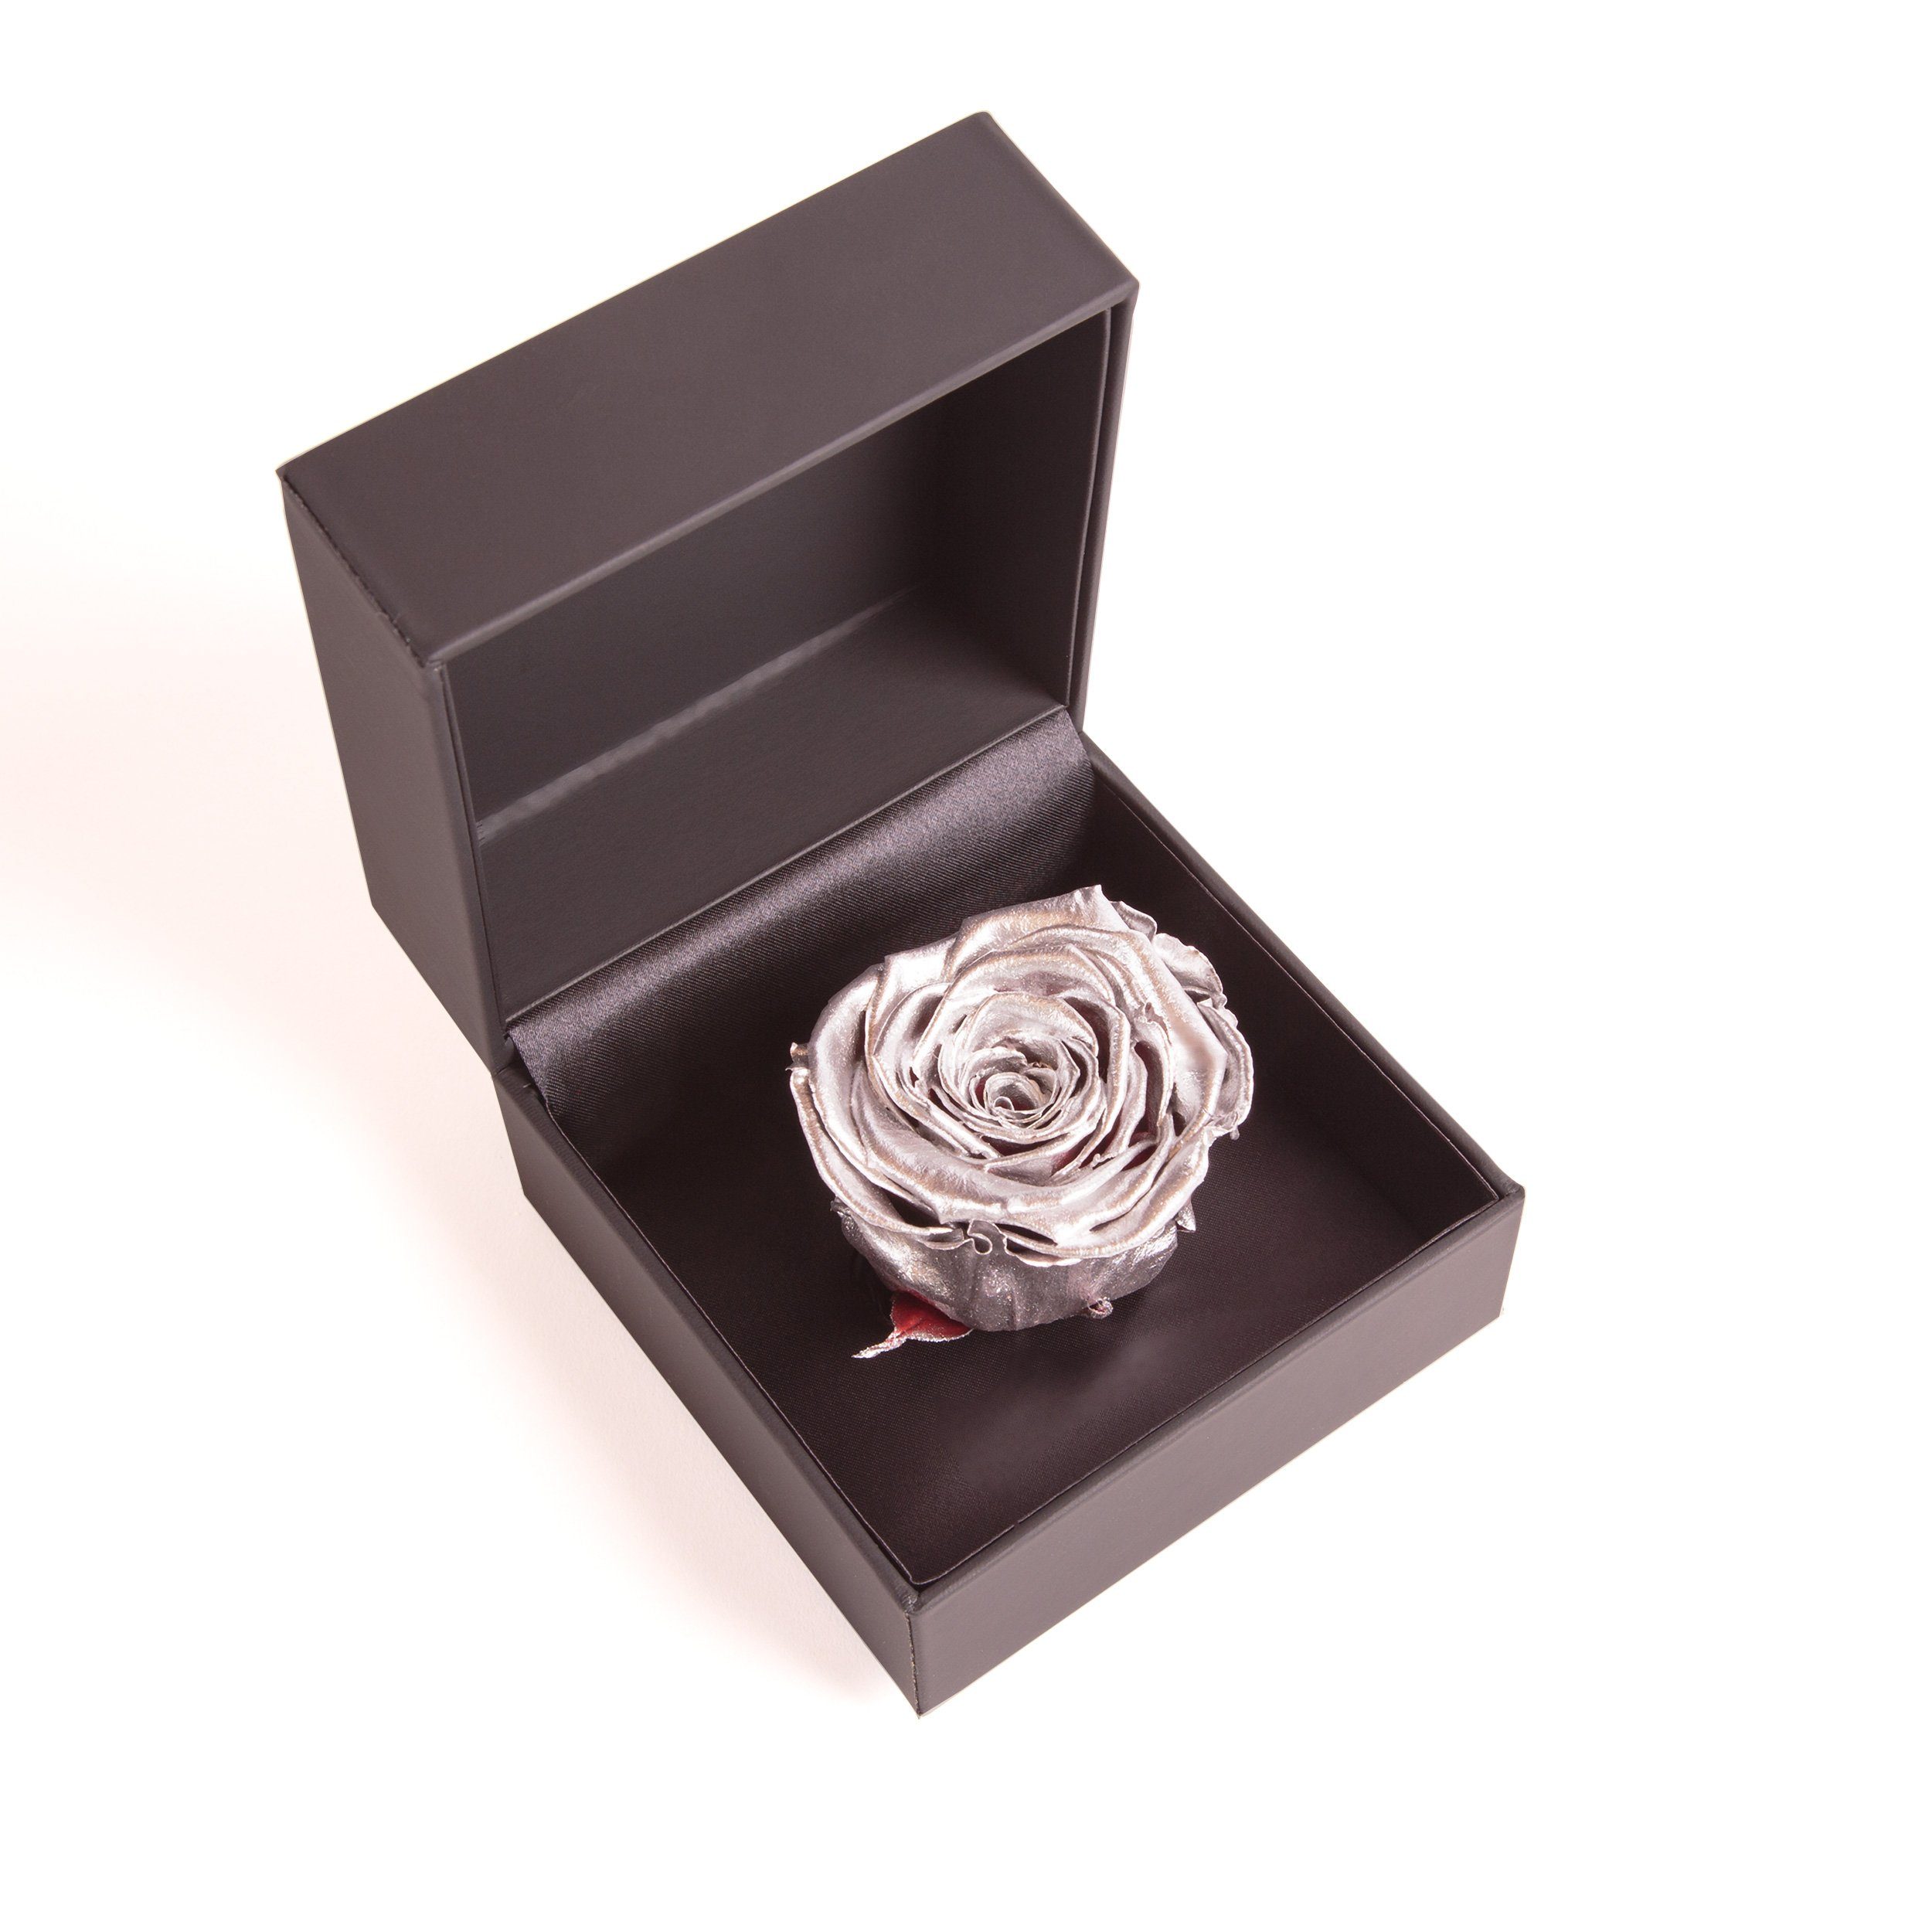 Heidelberg, SCHULZ Höhe Infinity in Rosenbox Rose cm, konserviert Kunstblume Rose, Langlebige Groß Silber Ringbox ROSEMARIE 9 Ringdose Box Rose